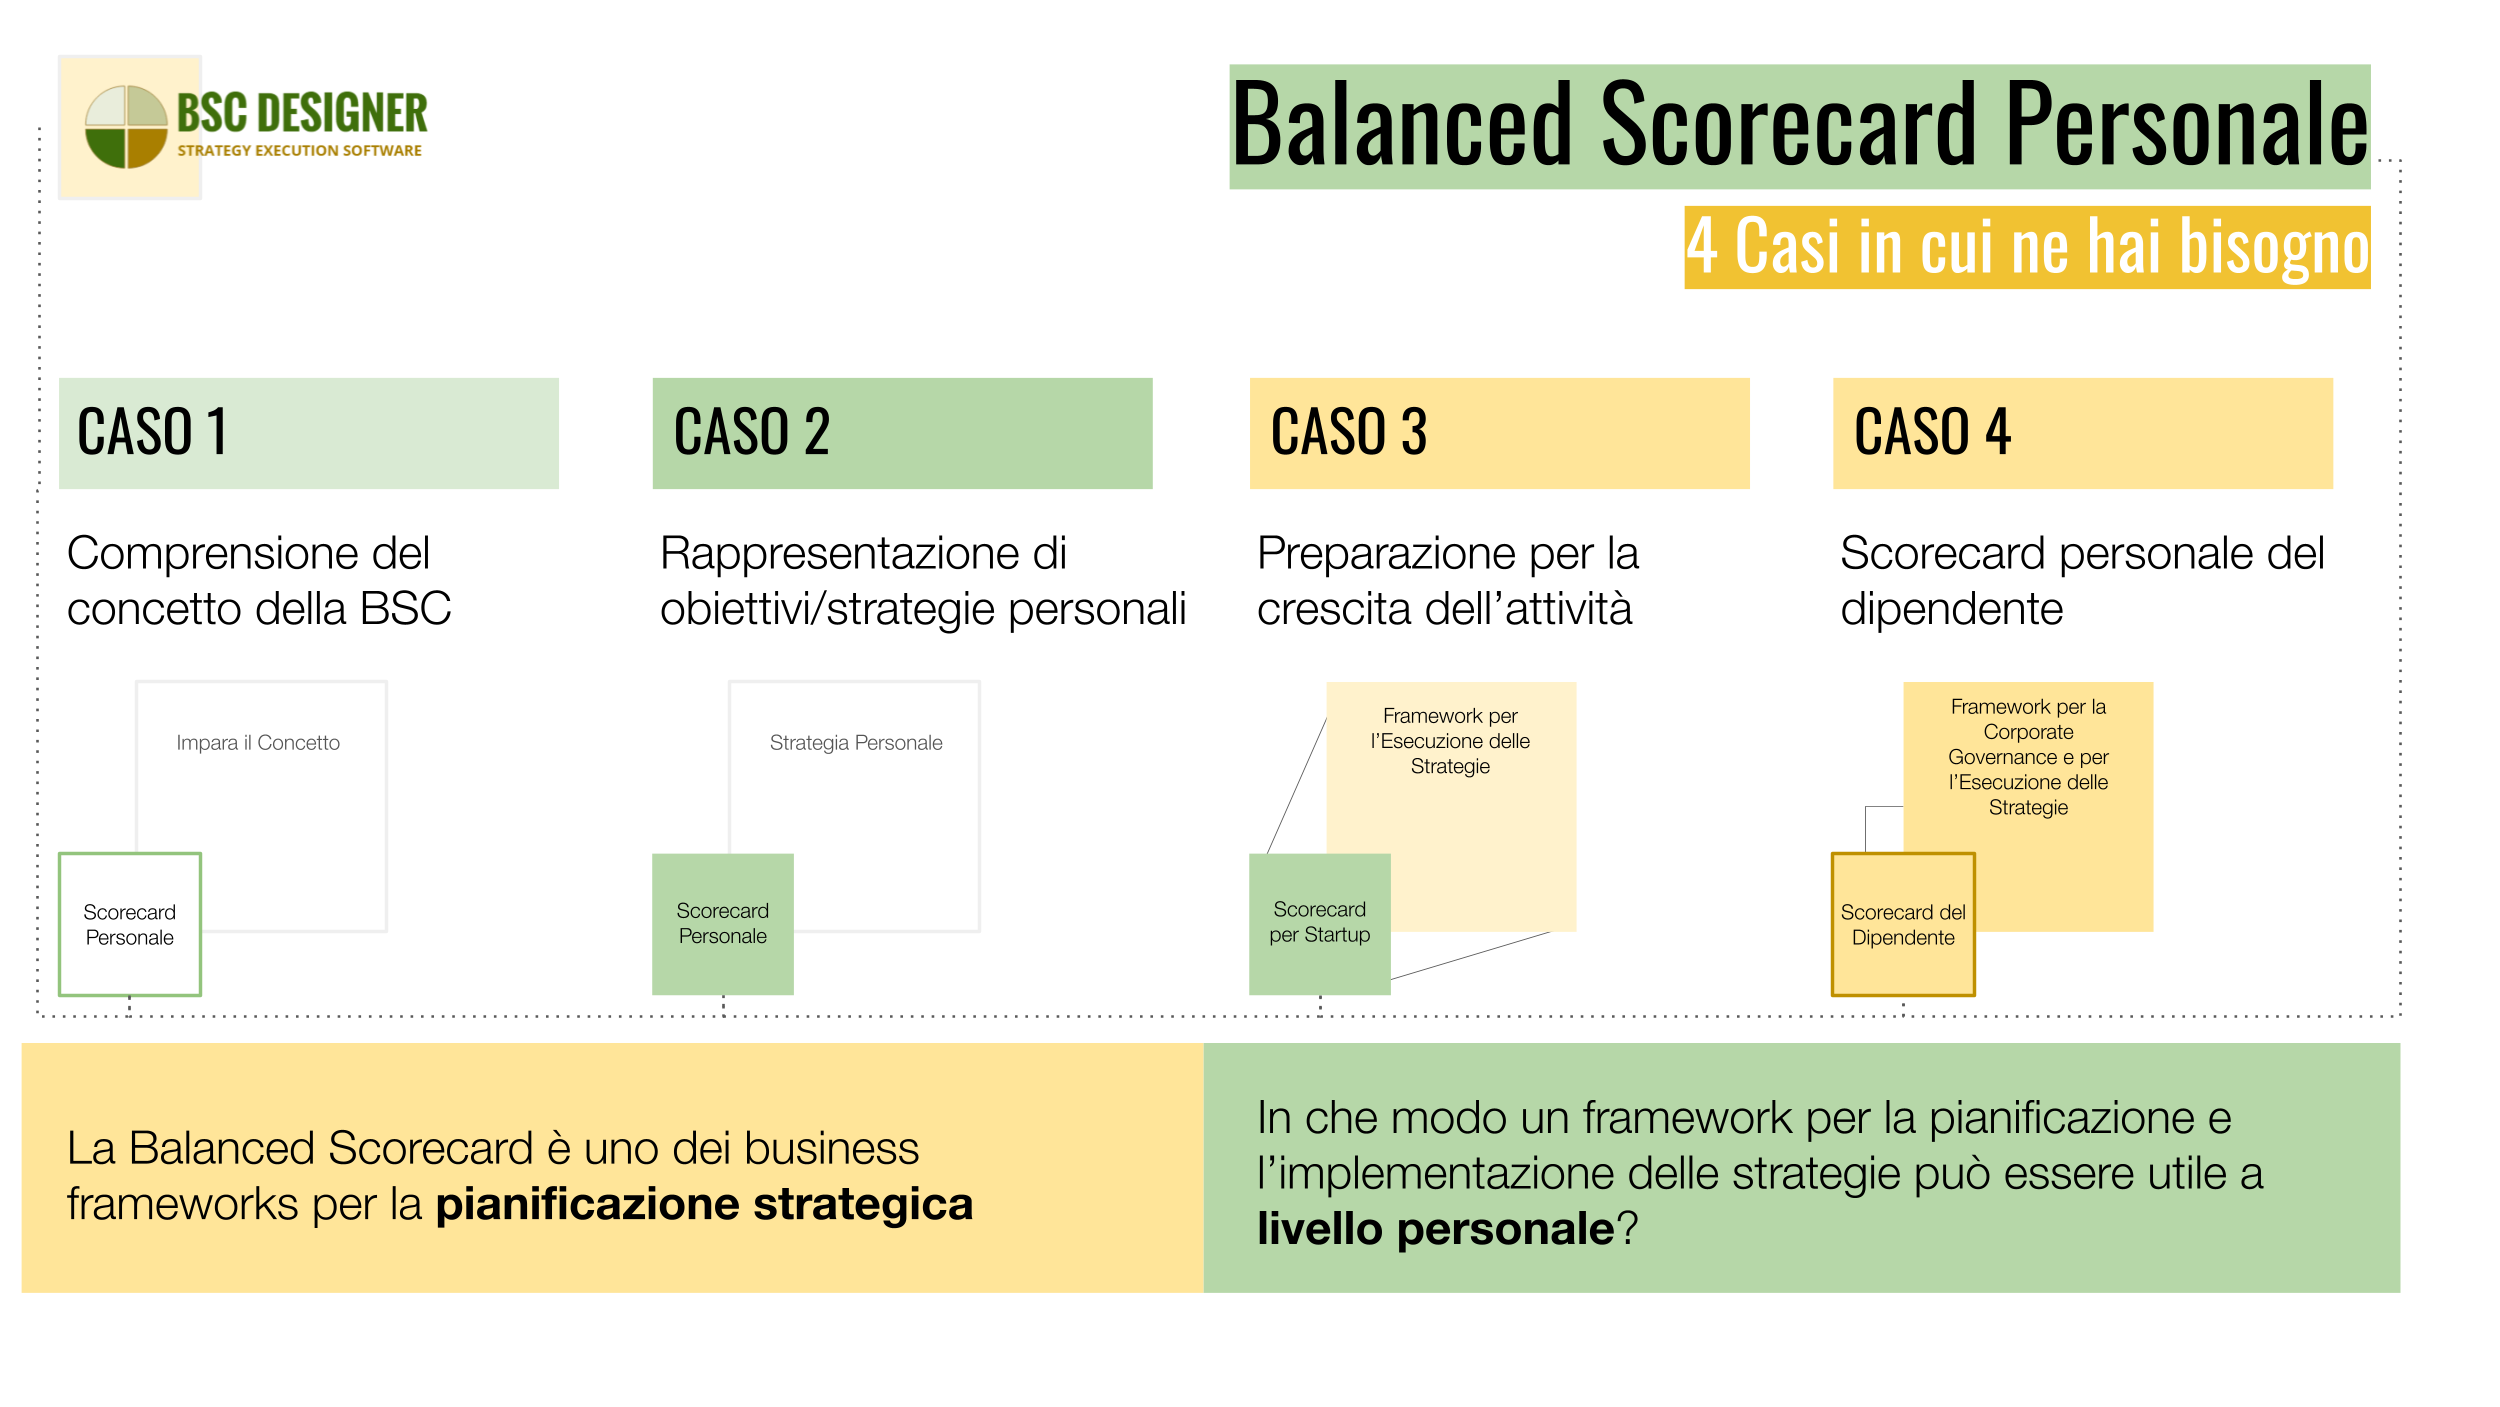 Balanced Scorecard Personale e Lavorativa di BSC Designer